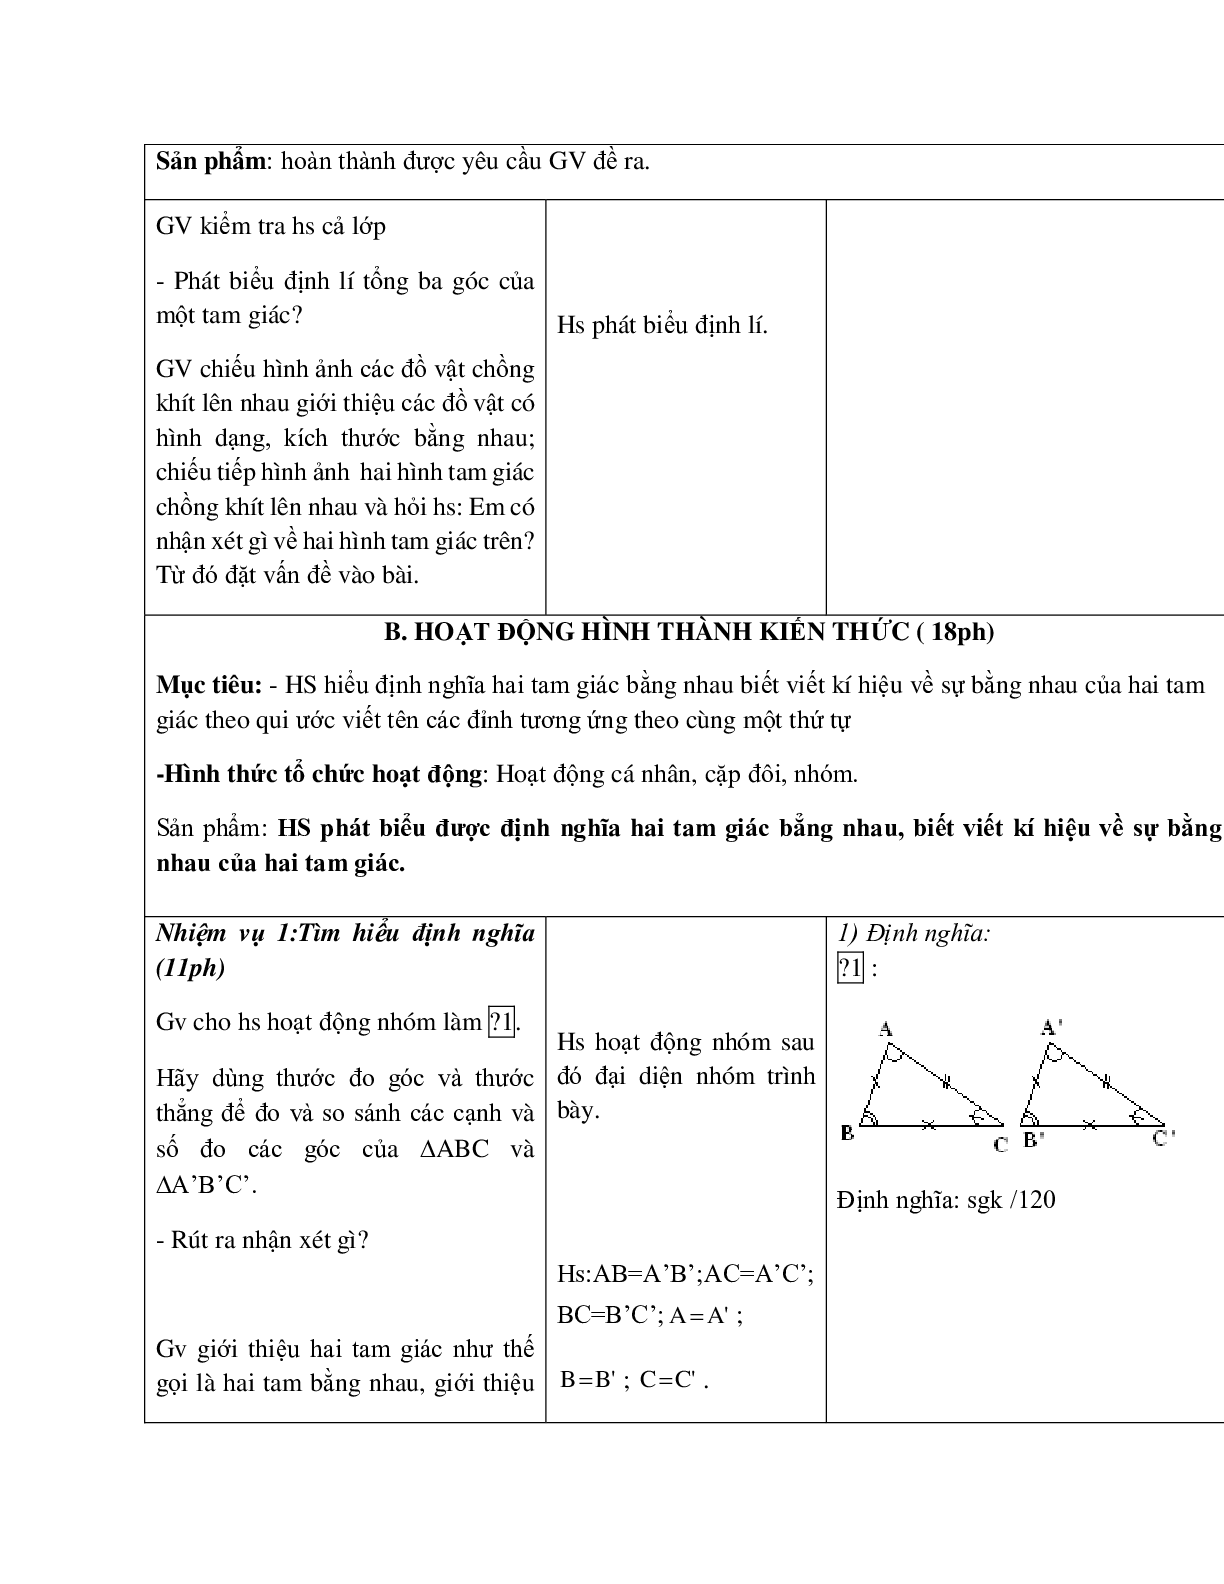 Giáo án Toán học 7 bài 2: Hai tam giác bằng nhau hay nhất (trang 2)